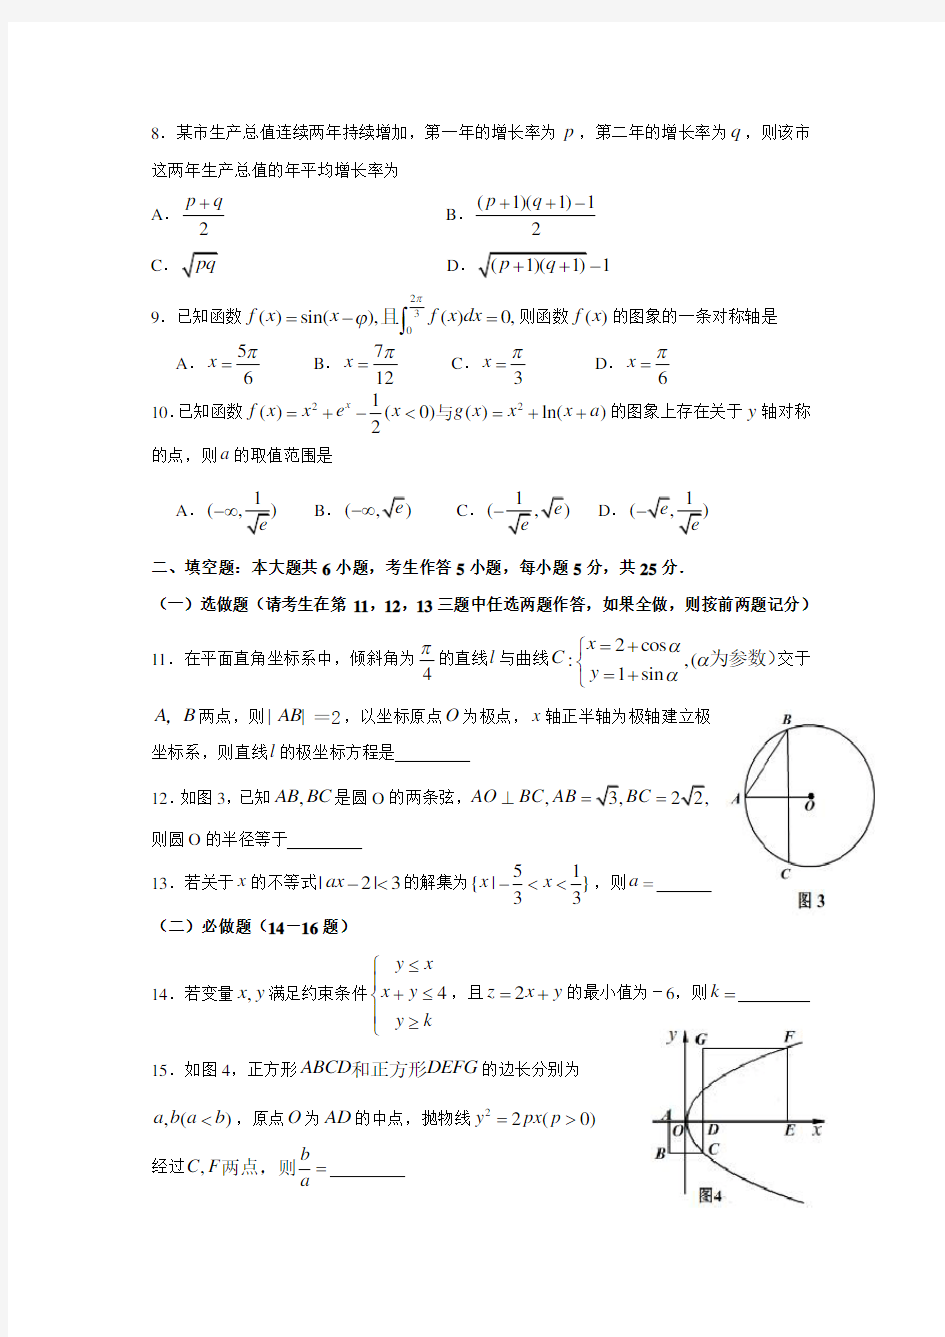 2014年高考理科数学试题(湖南卷)及参考答案